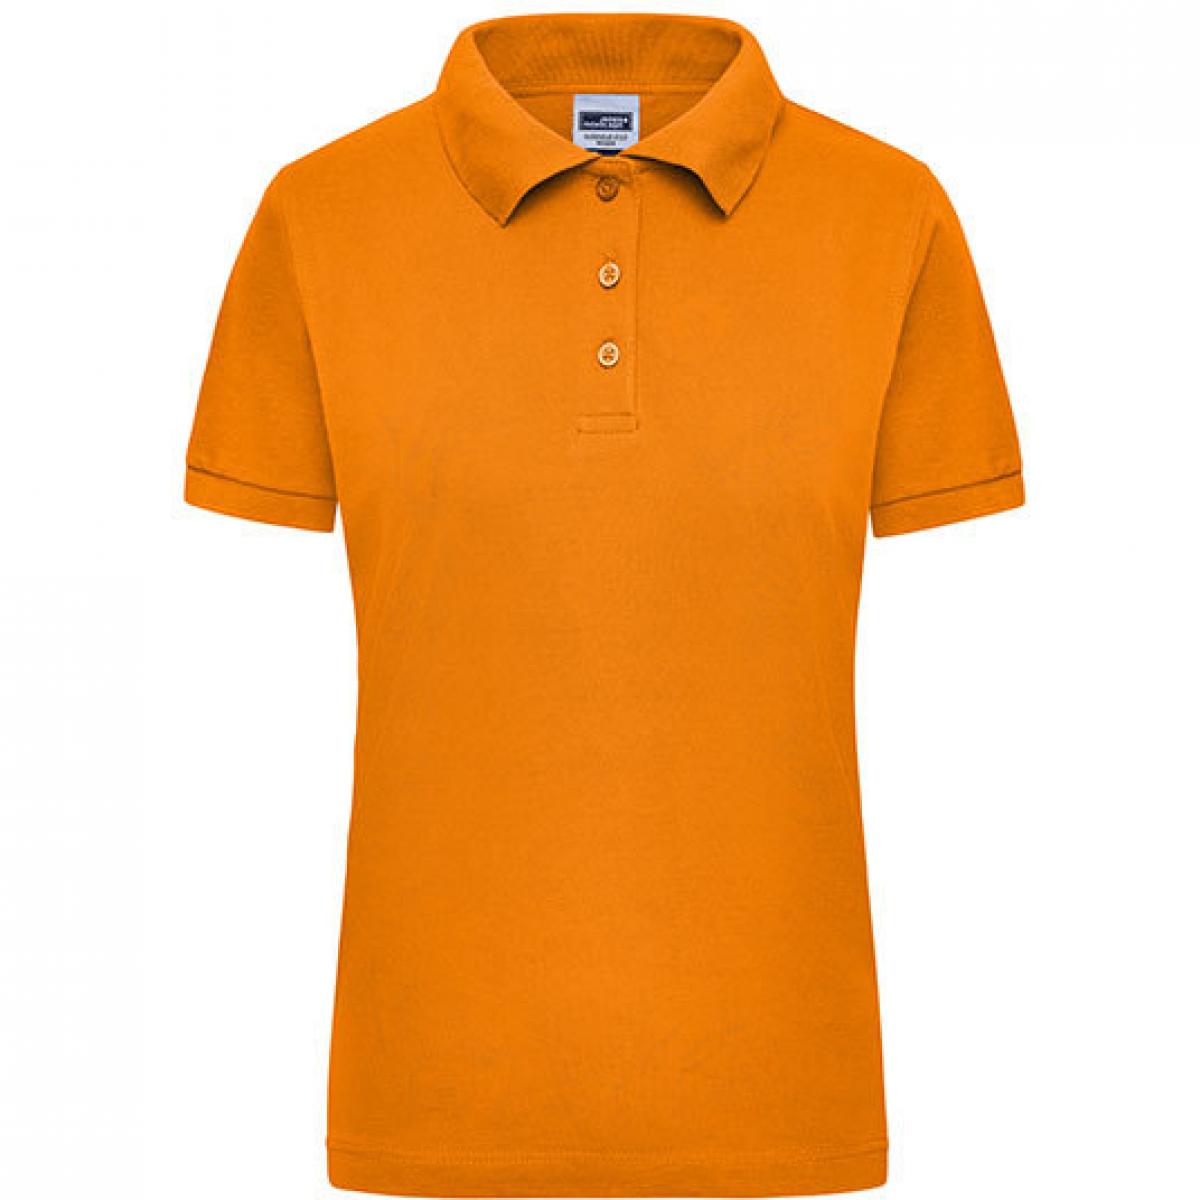 Hersteller: James+Nicholson Herstellernummer: JN 803 Artikelbezeichnung: Damen Workwear Polo / Trocknergeeignet Farbe: Orange